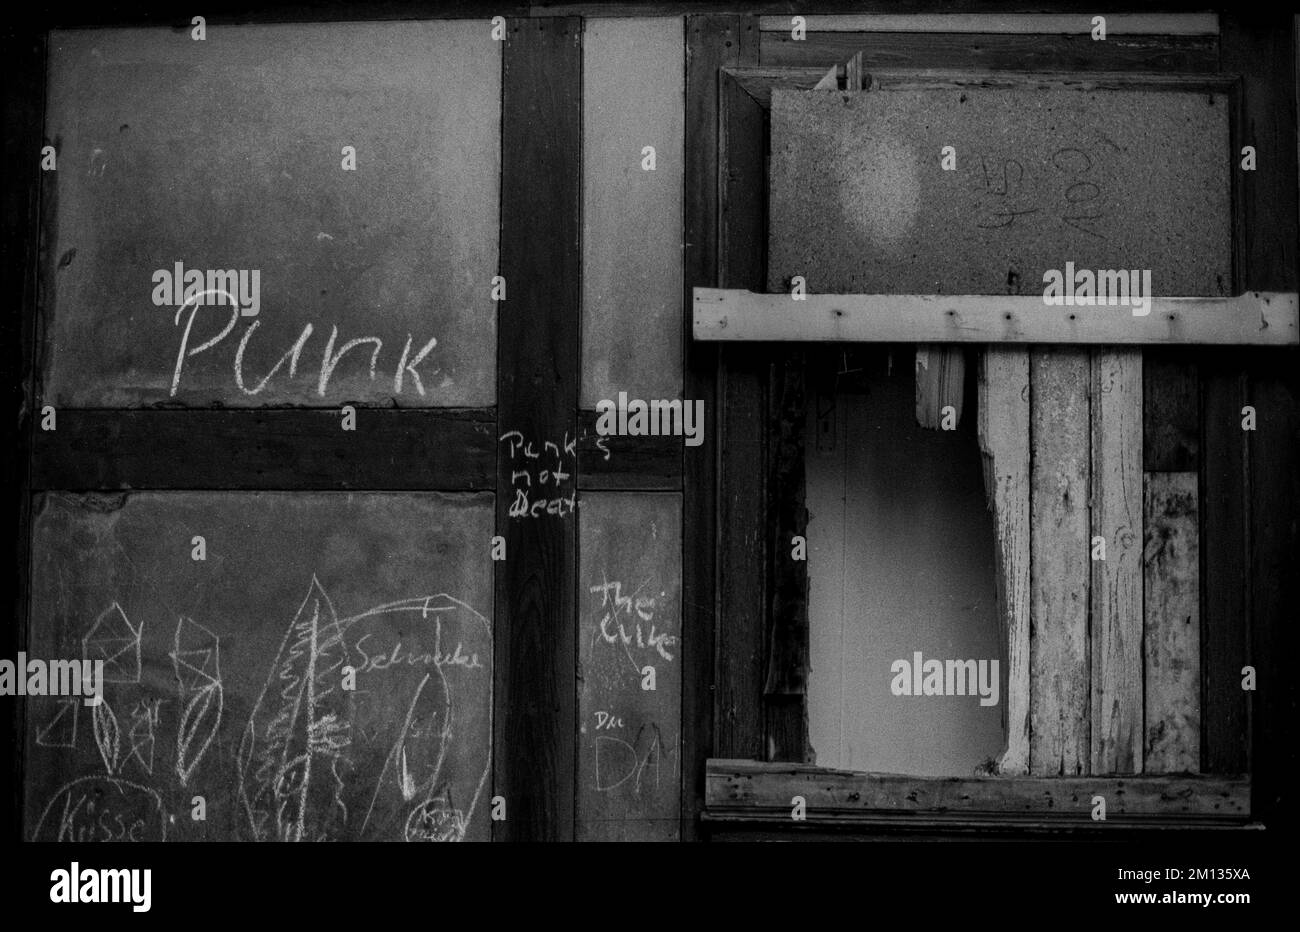 RDA, Halberstadt, 27.05.1988, entramado de madera, ventana rota, punk, punk no está muerto, la cura Foto de stock